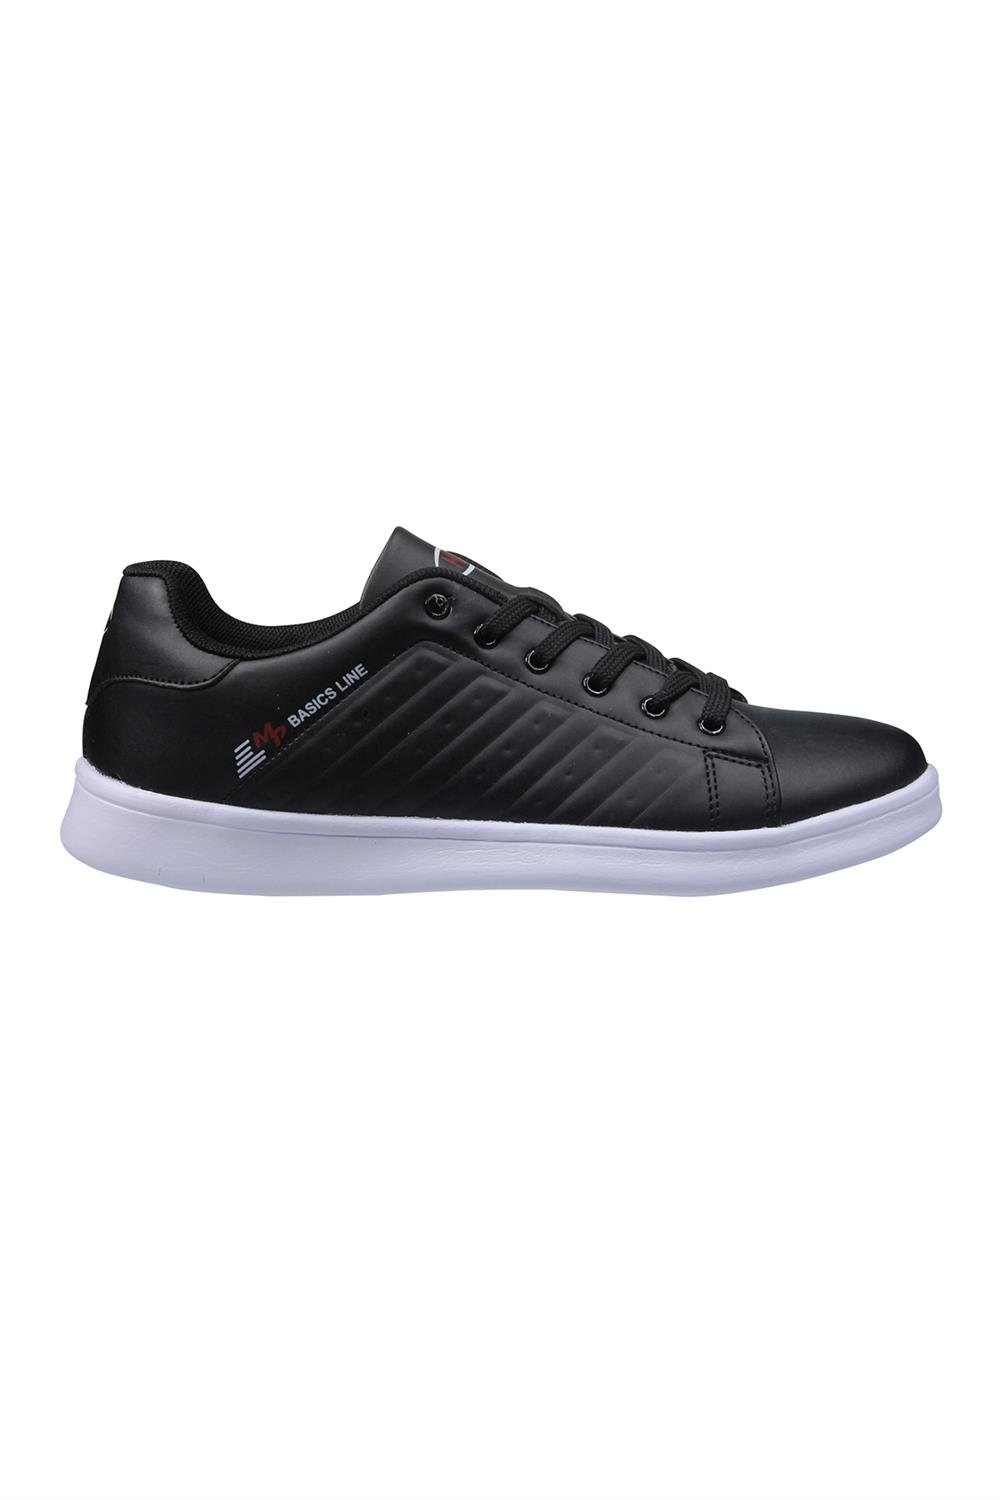 Unisex Siyah-beyaz Spor Ayakkabı Modelleri ve Fiyatları